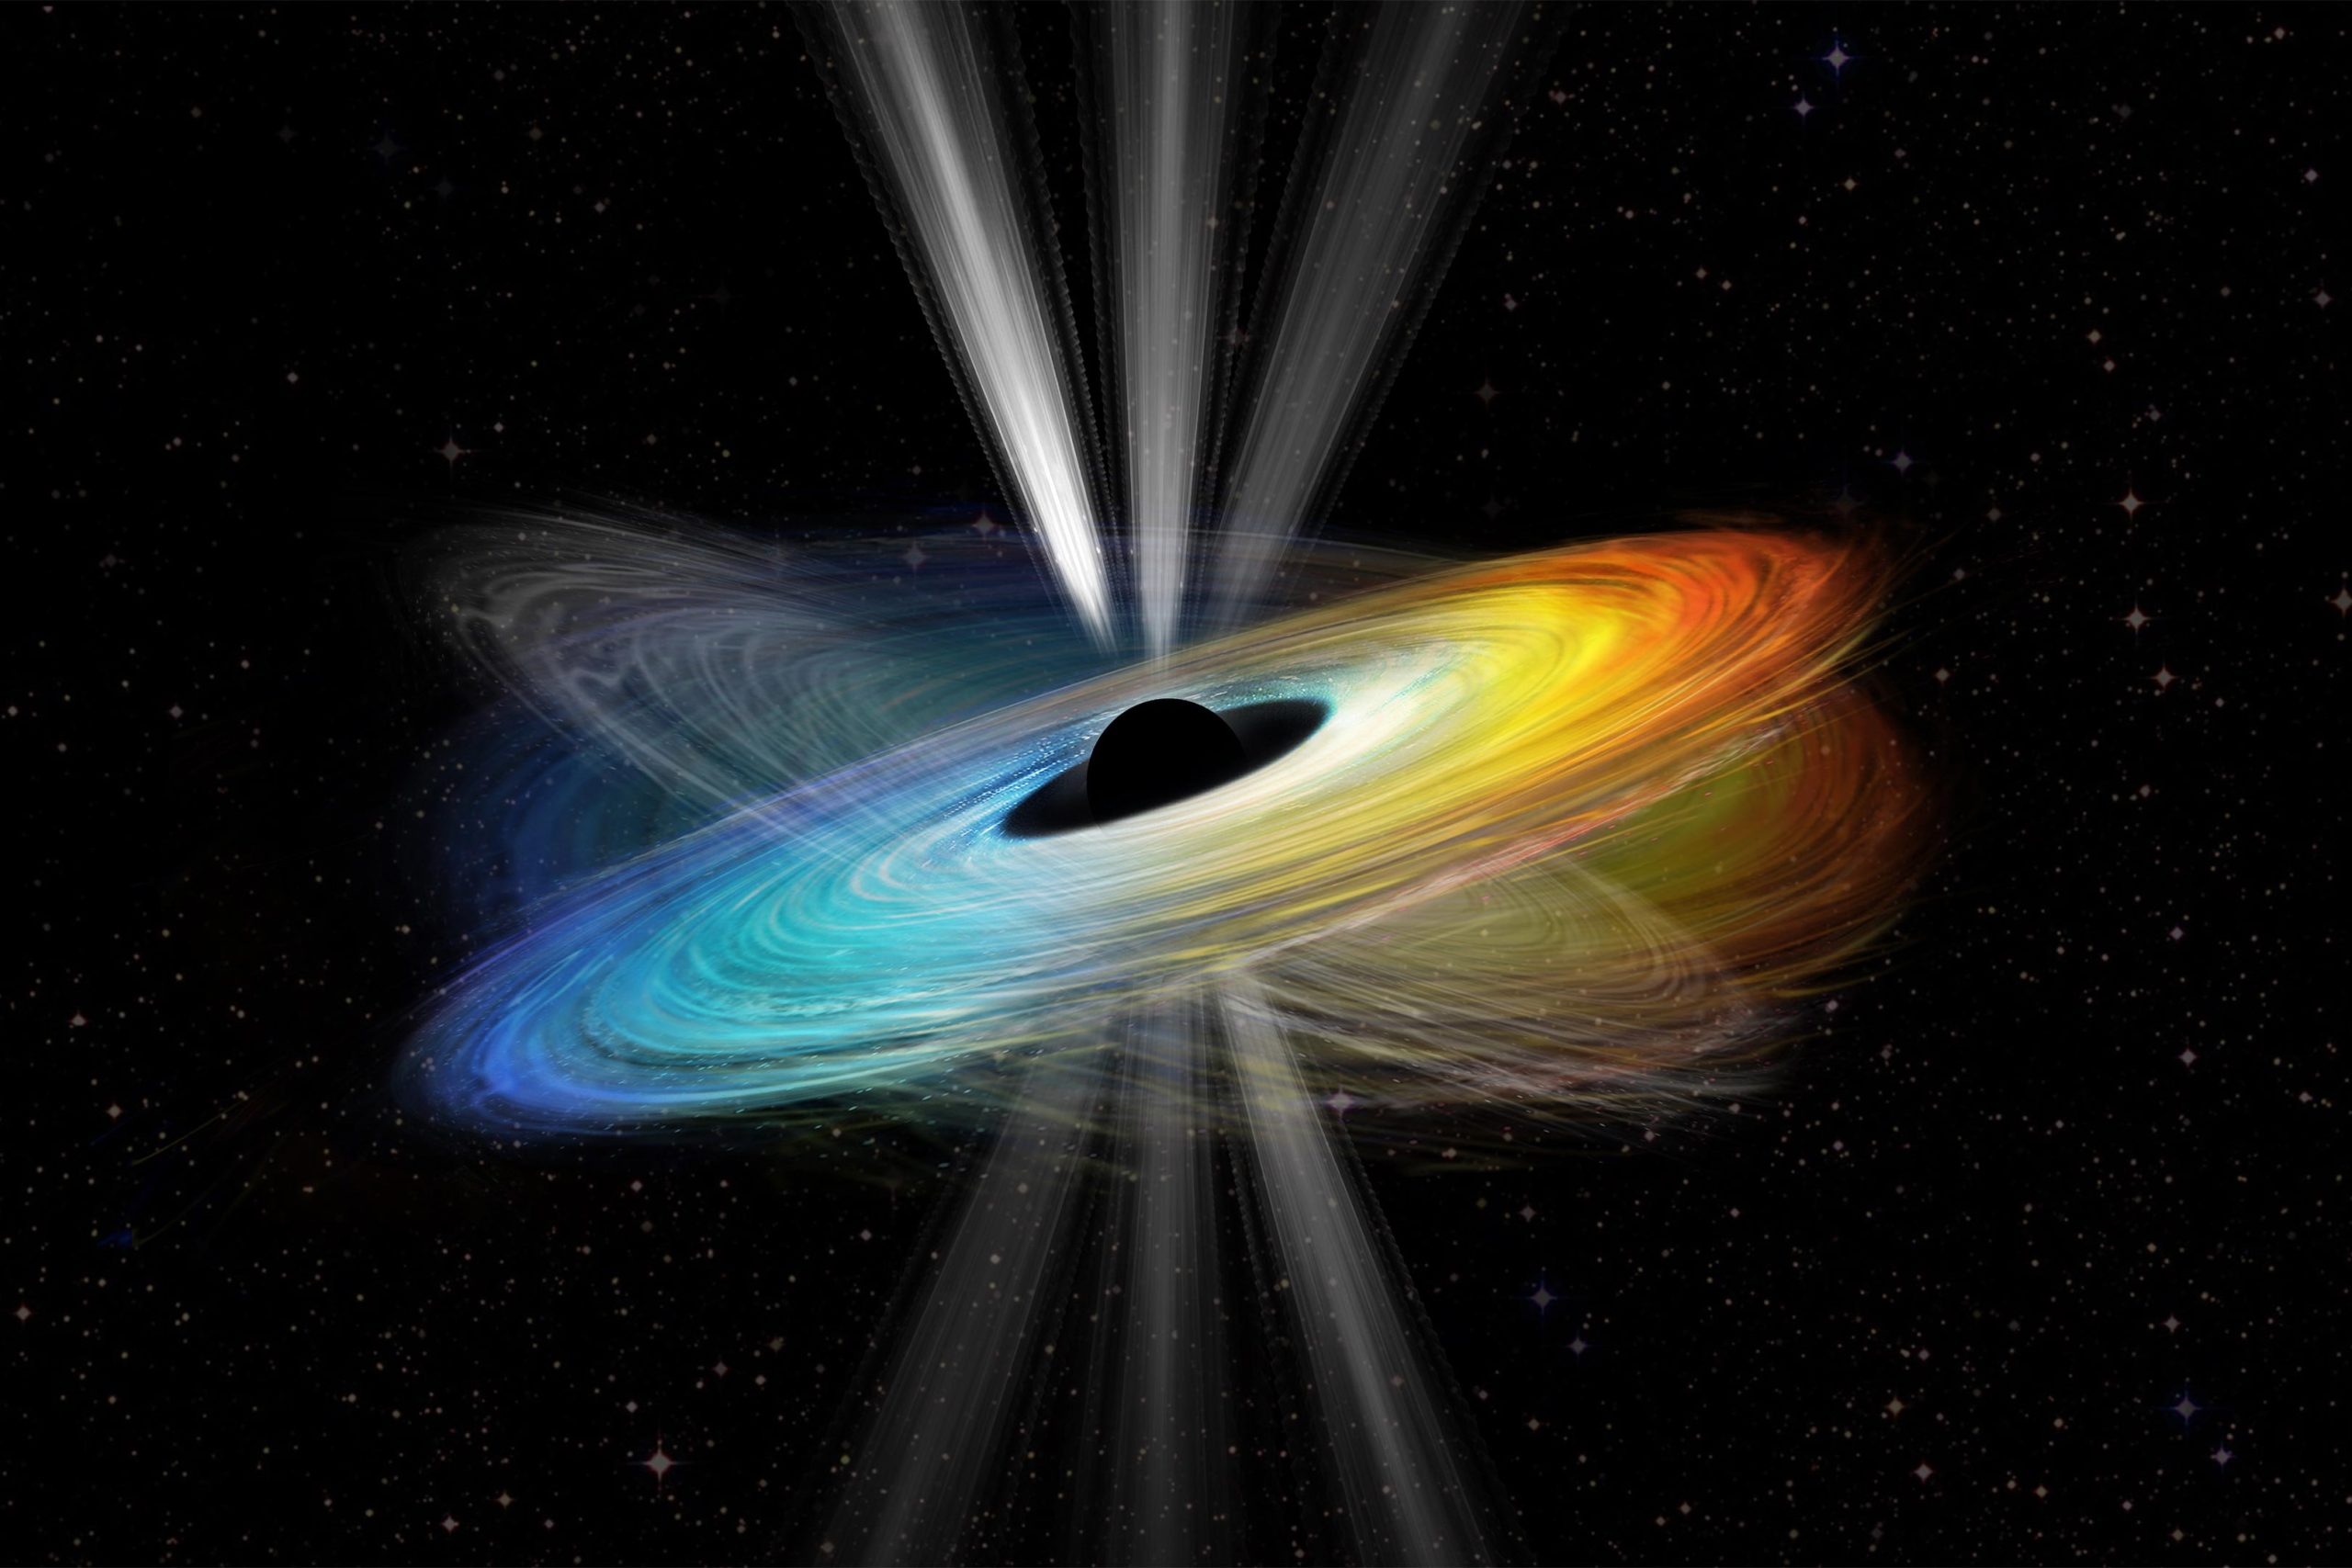 Se ha verificado el giro del agujero negro supermasivo: brilla la teoría general de la relatividad de Einstein